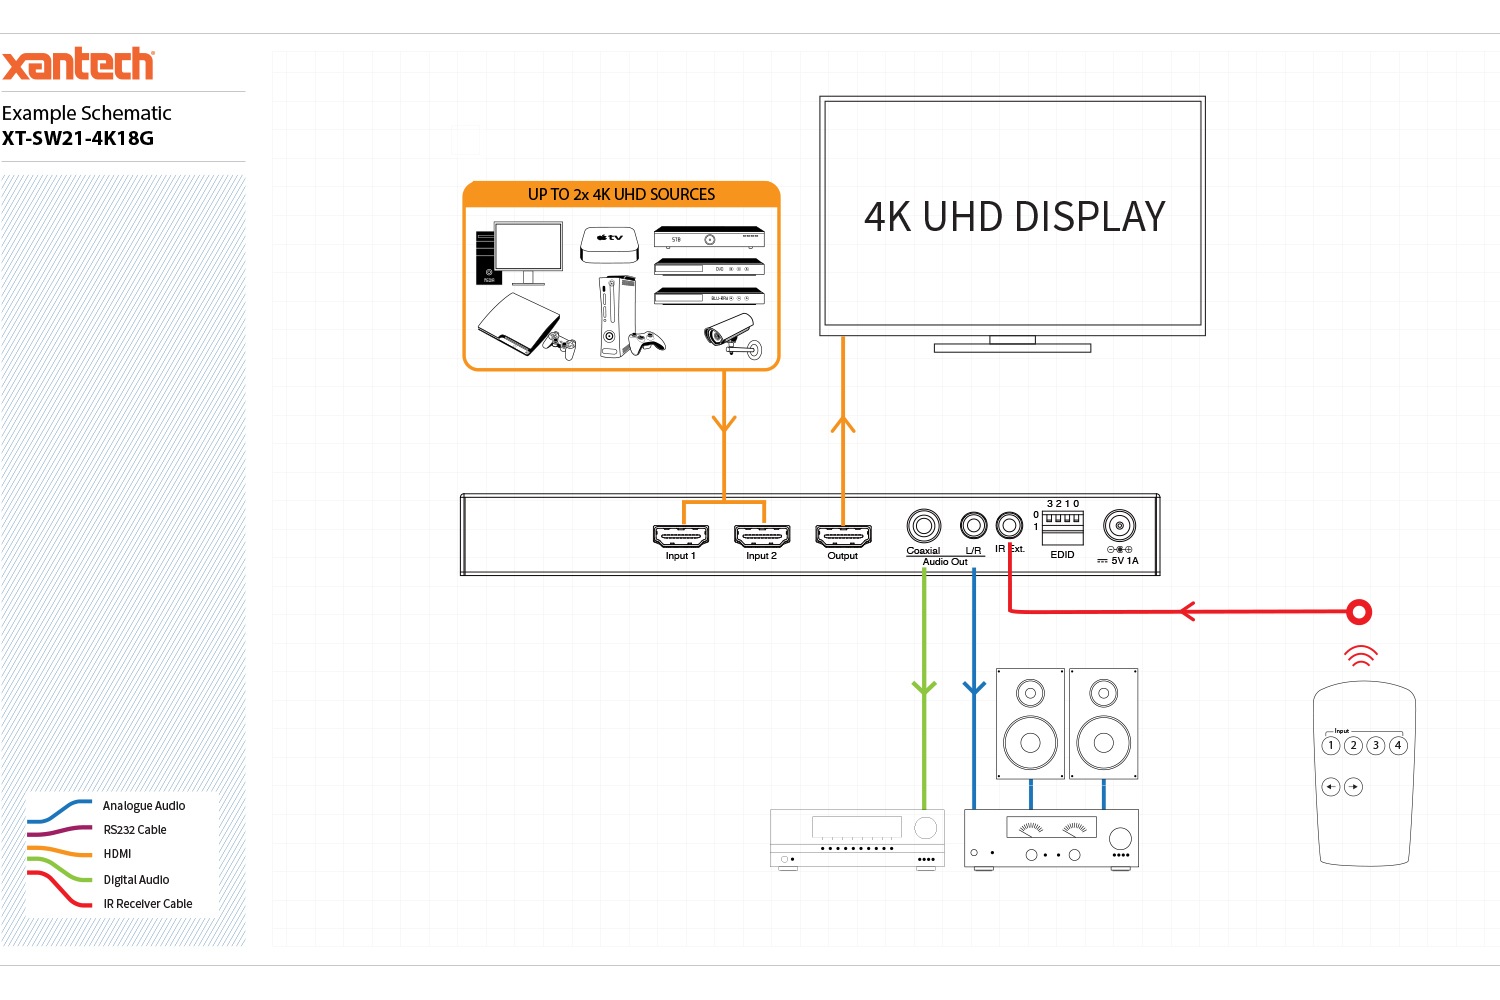 SPLITER XTECH 4 PUERTOS FHD Multiplicador HDMI (XHA-410)